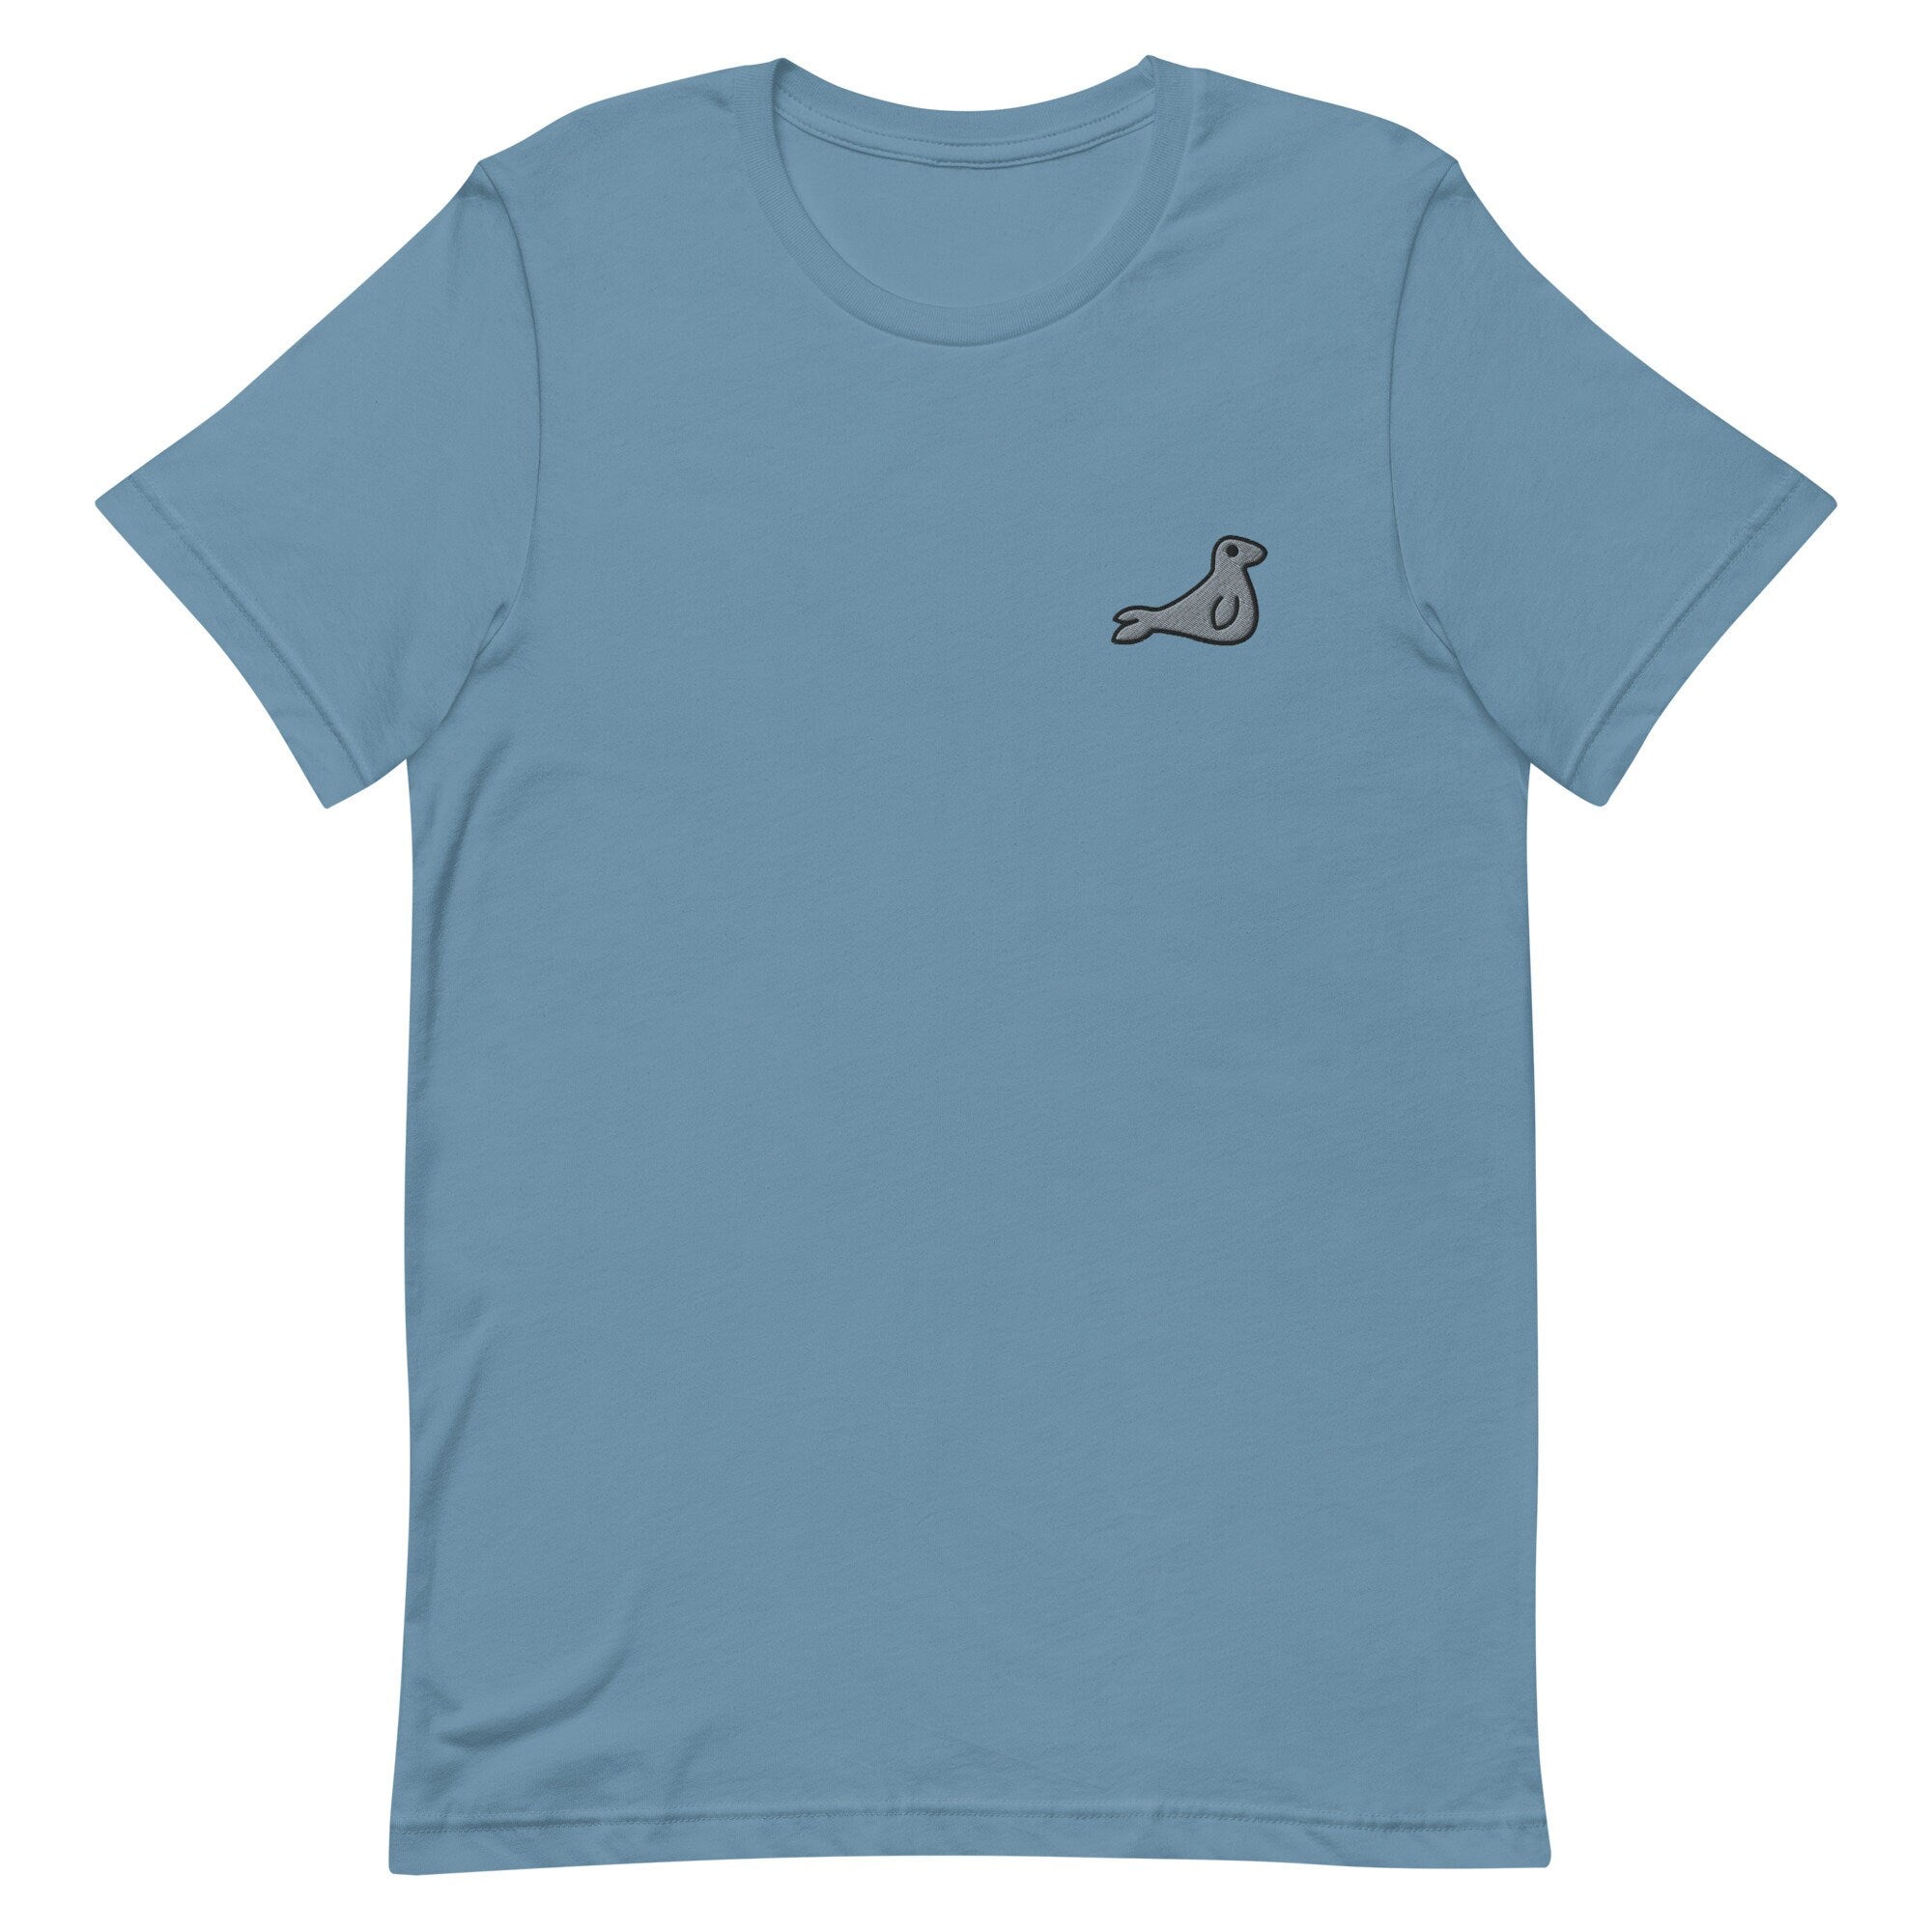 Seal Premium Men's T-Shirt, Embroidered Men's T-Shirt Gift for Boyfriend, Men's Short Sleeve Shirt - Multiple Colors